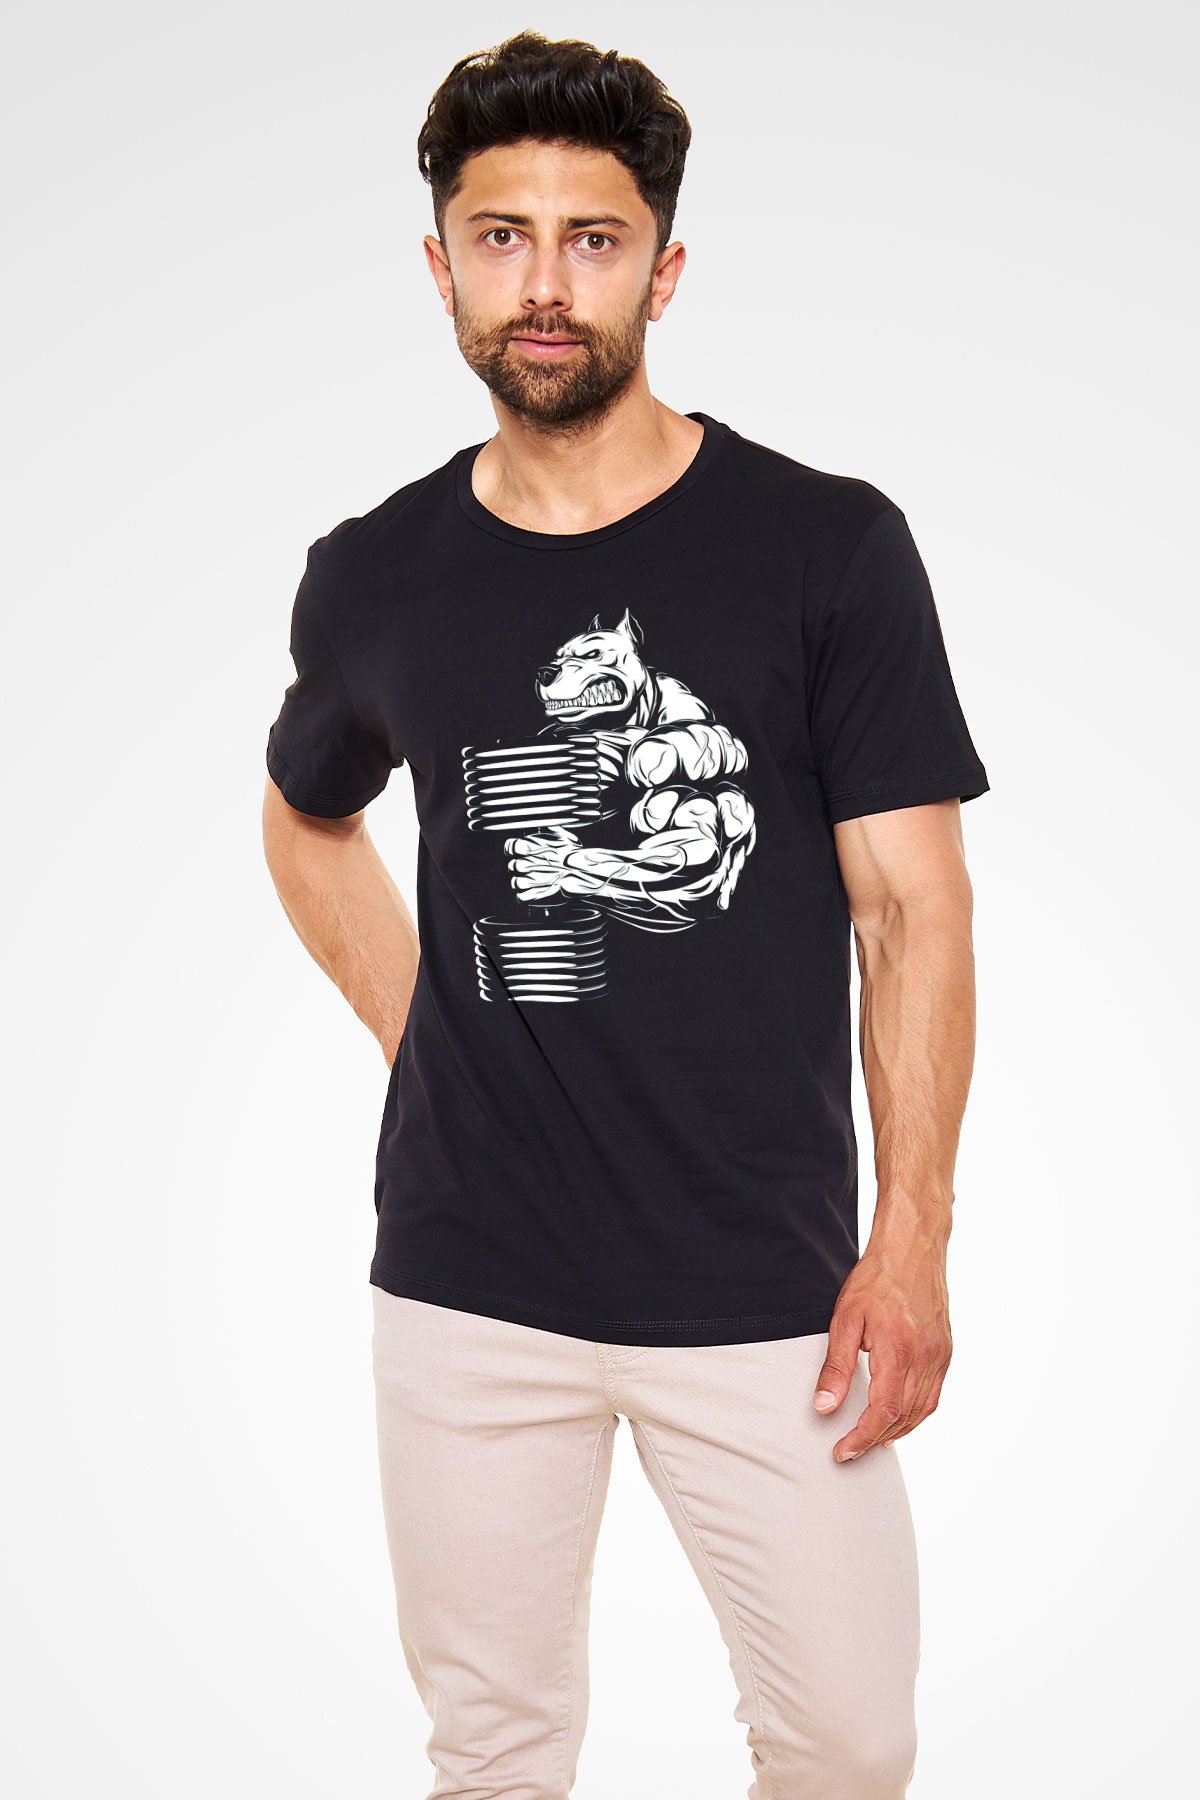 Vücut geliştirme Siyah Unisex Tişört T-Shirt - TişörtFabrikası